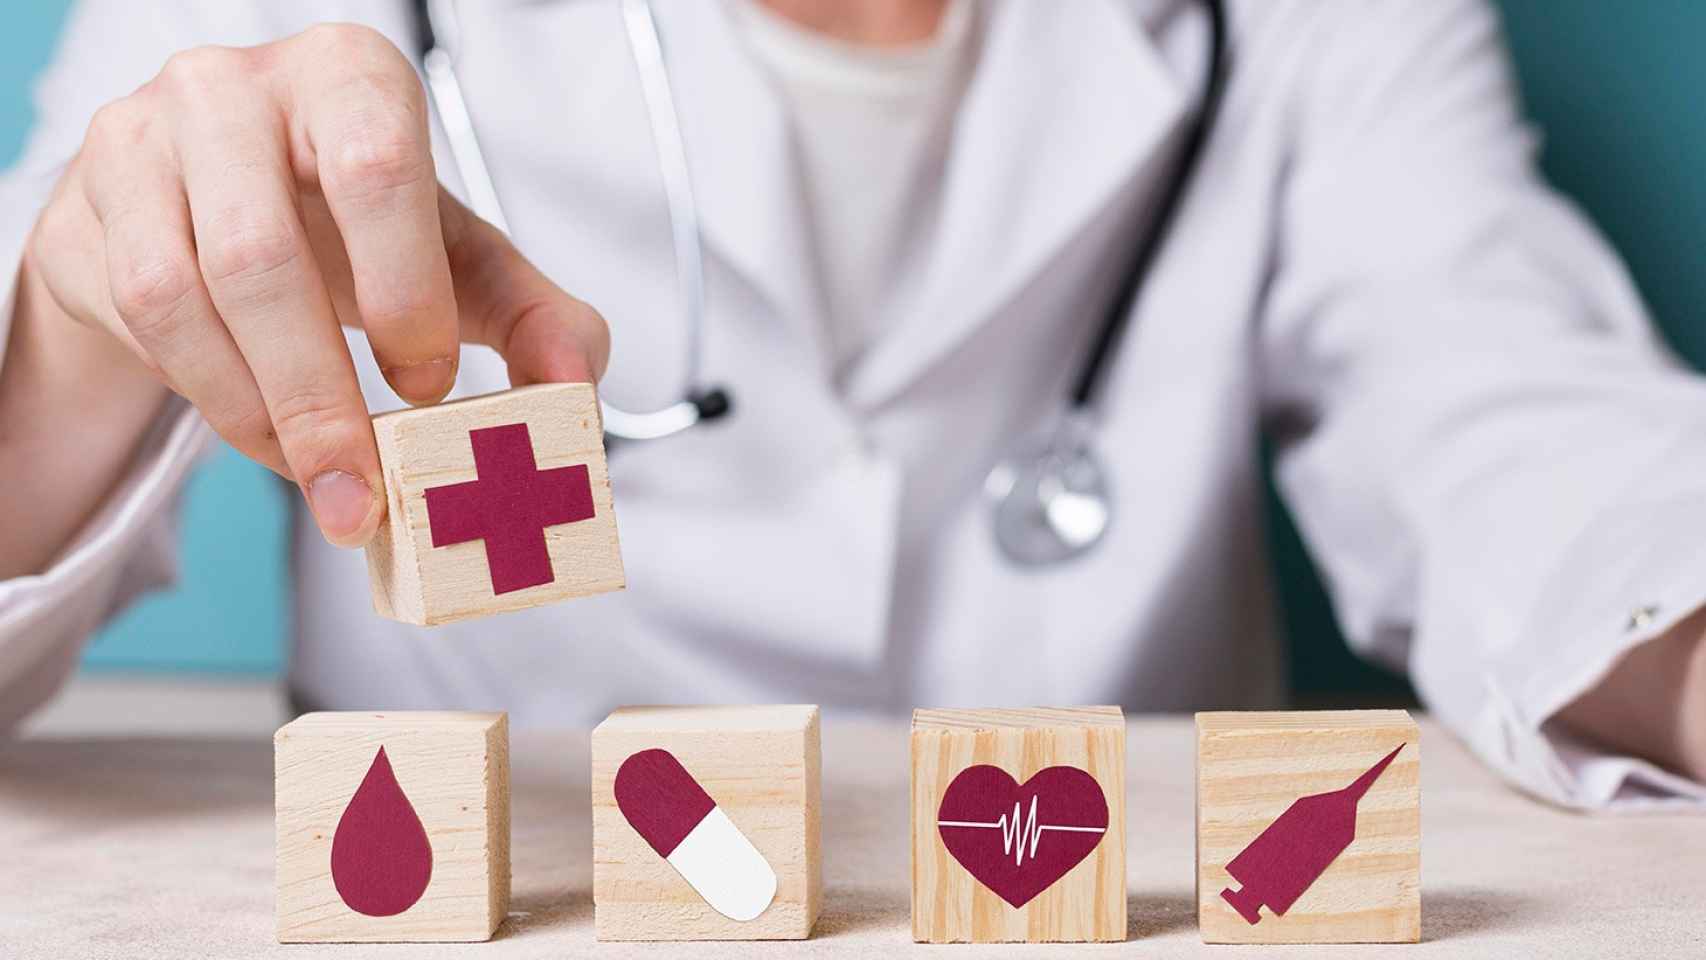 Sanitario y bloques de madera con símbolos de medicina